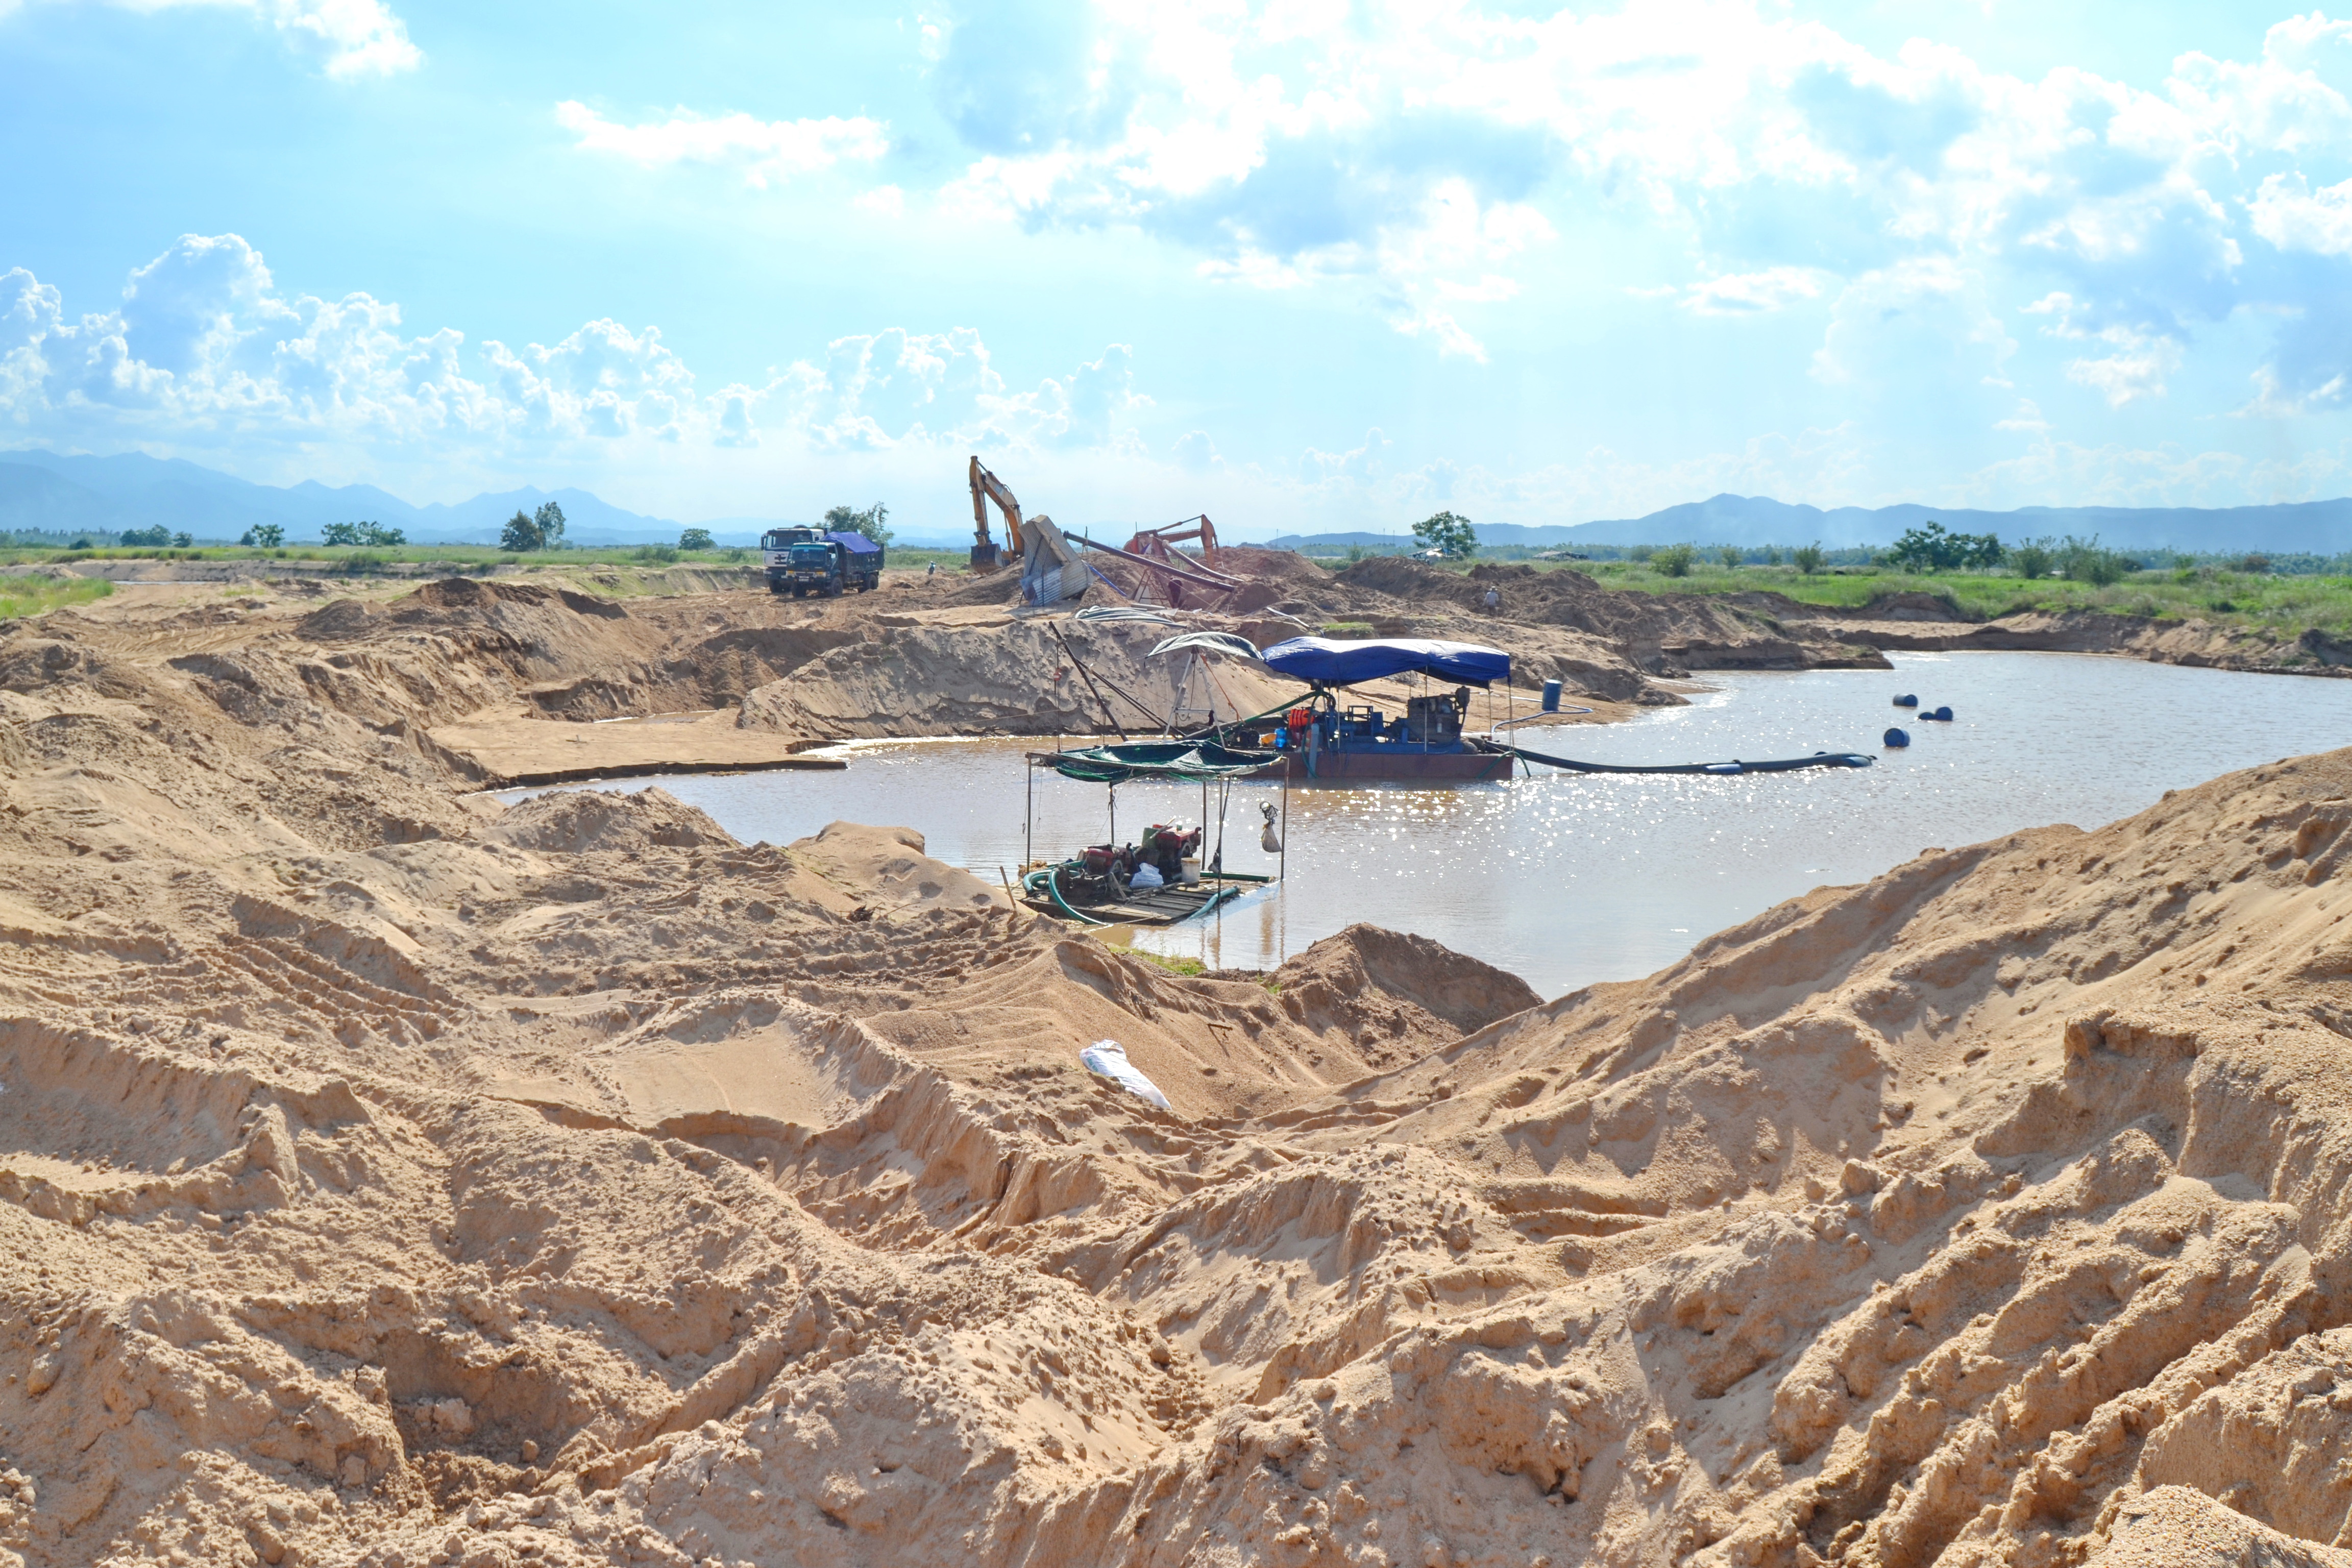 Doanh nghiệp mượn giấy phép hợp pháp để khai thác cát lậu